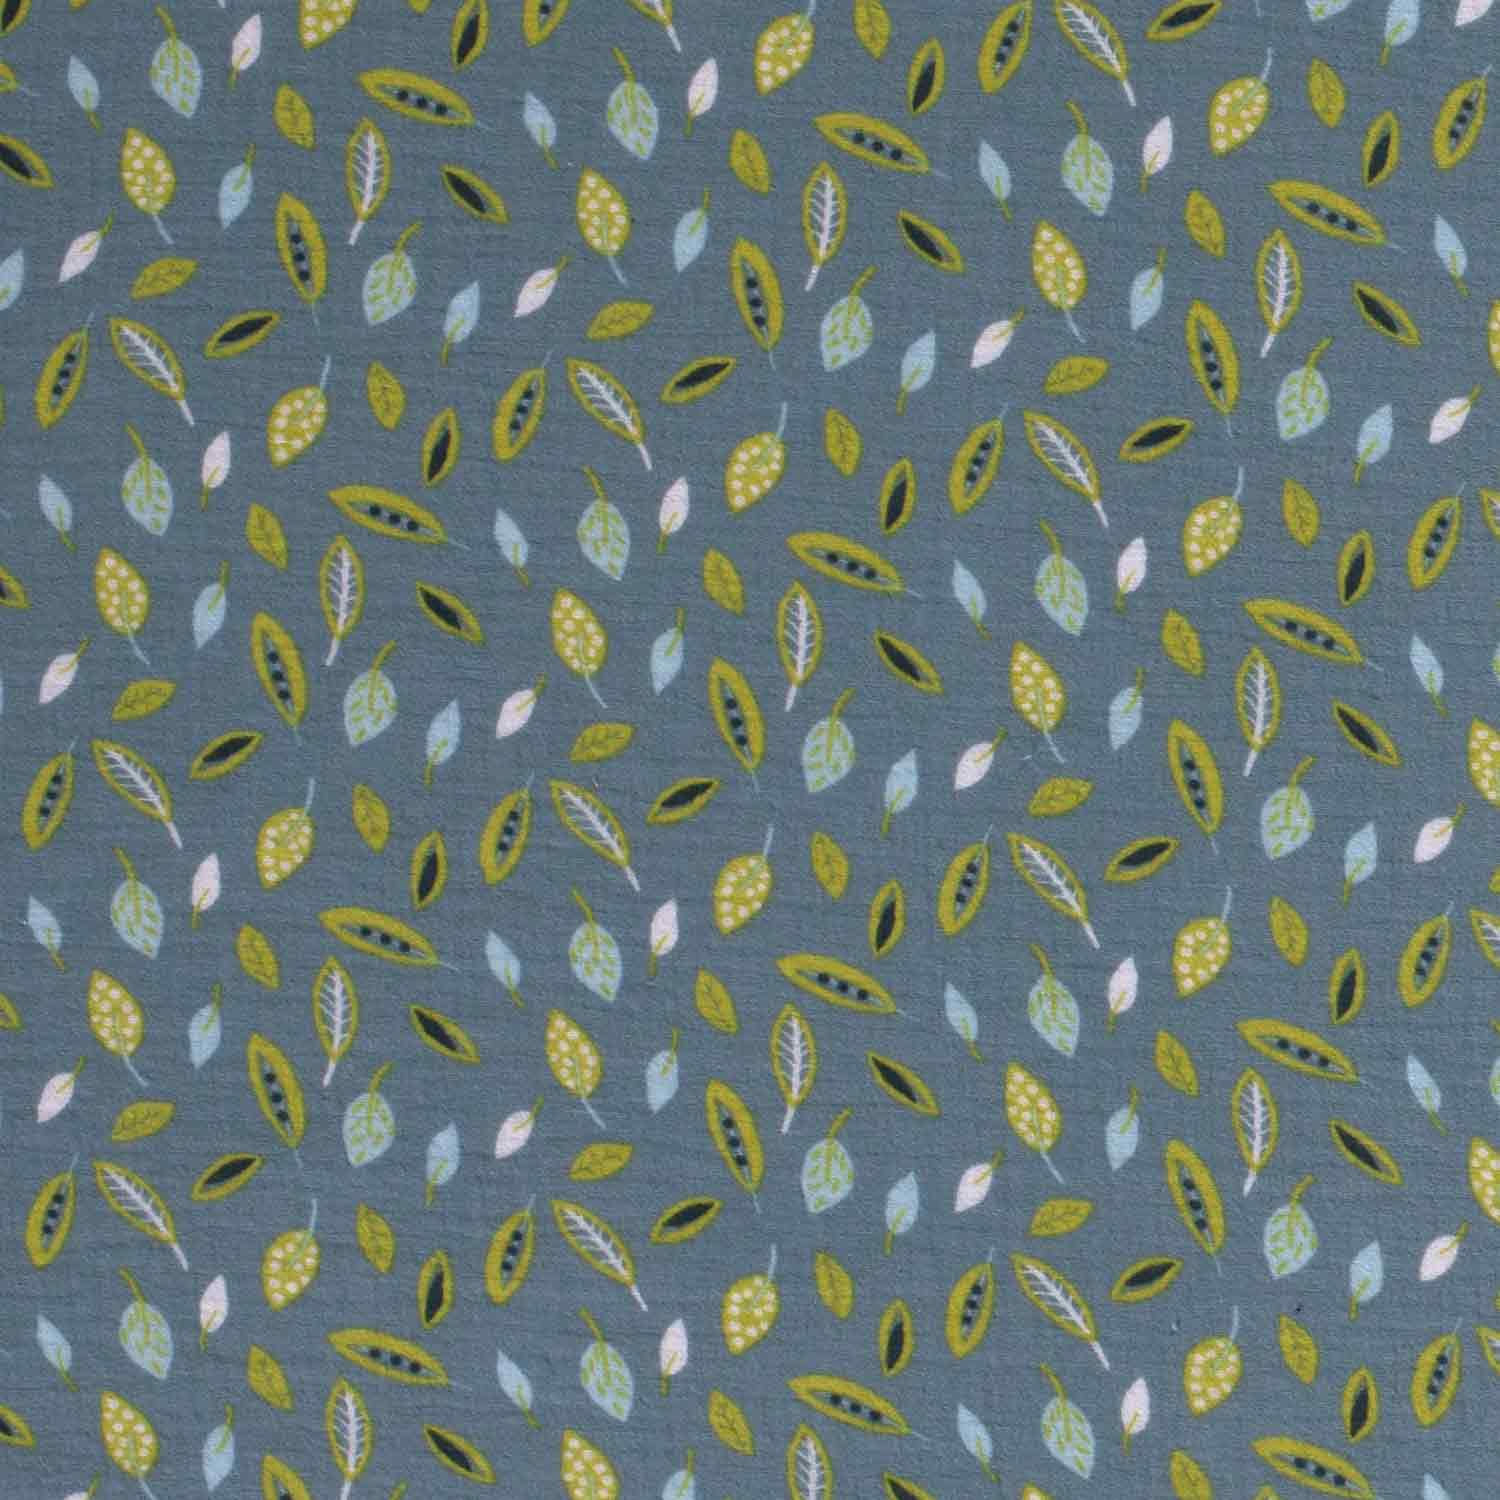 Musselin 1440 EUR/m dunkle minze - bedruckt mit Blättern in lime hellblau und weiß - Stoffe Meterw